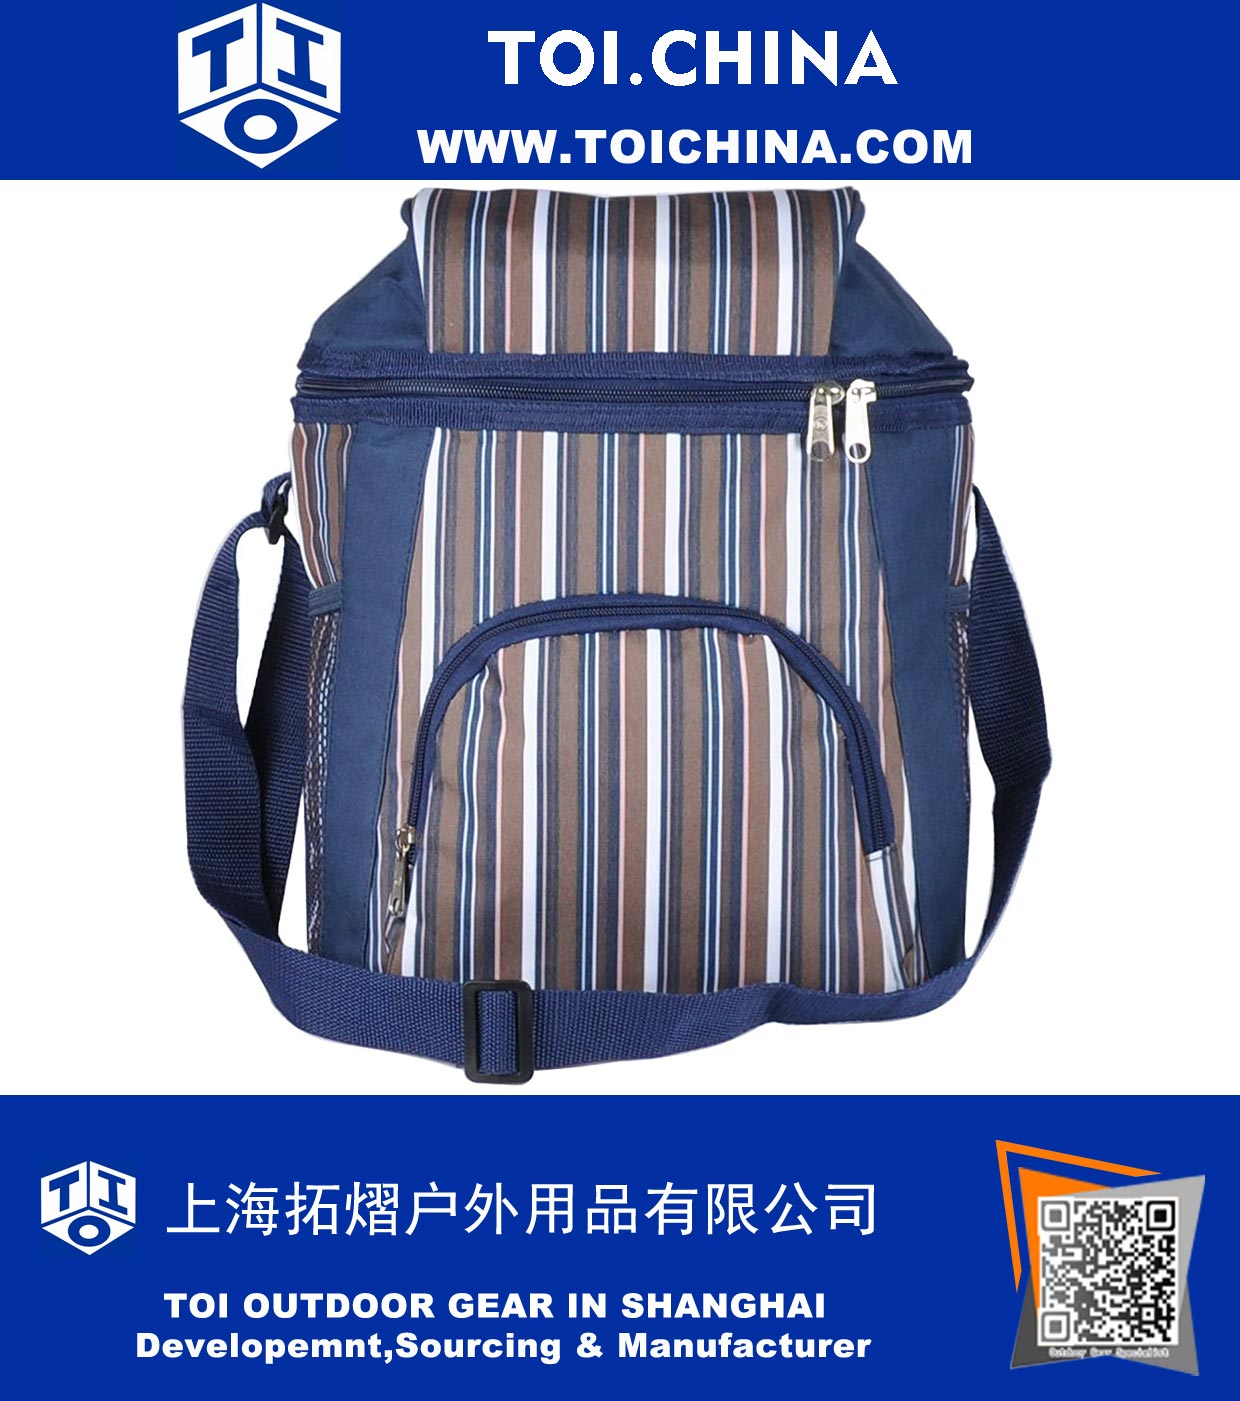 Bolsa de 16 bolsas de picnic Picnic Bag Cooler